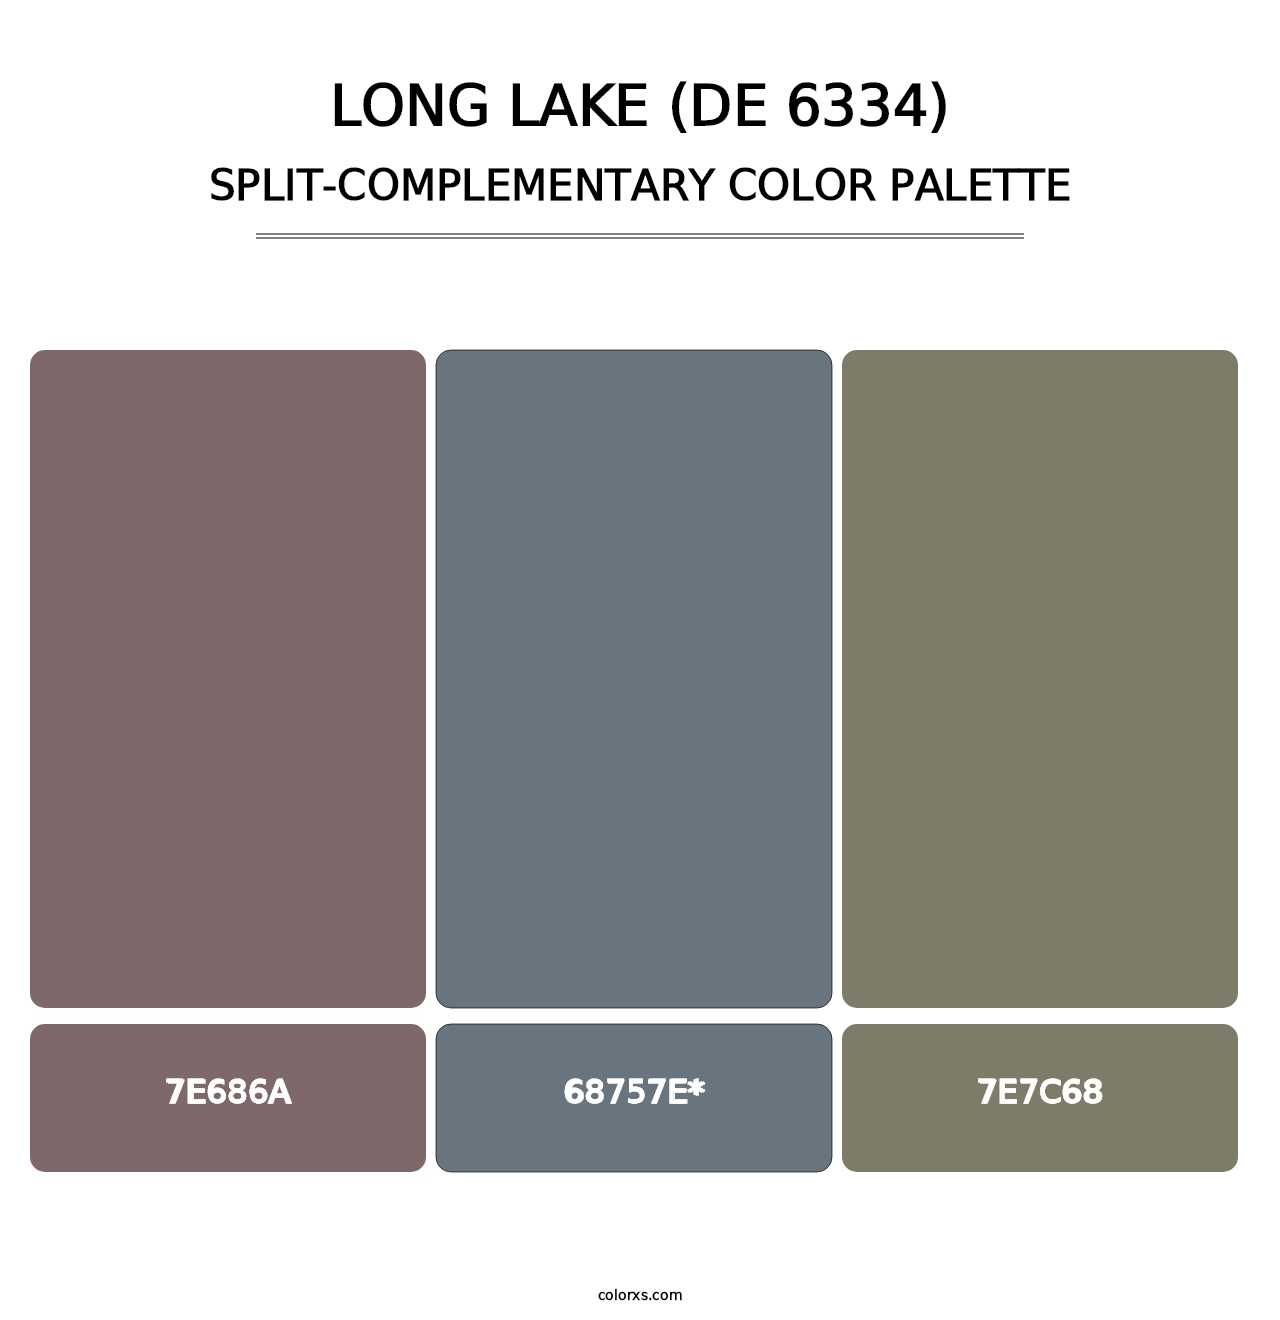 Long Lake (DE 6334) - Split-Complementary Color Palette